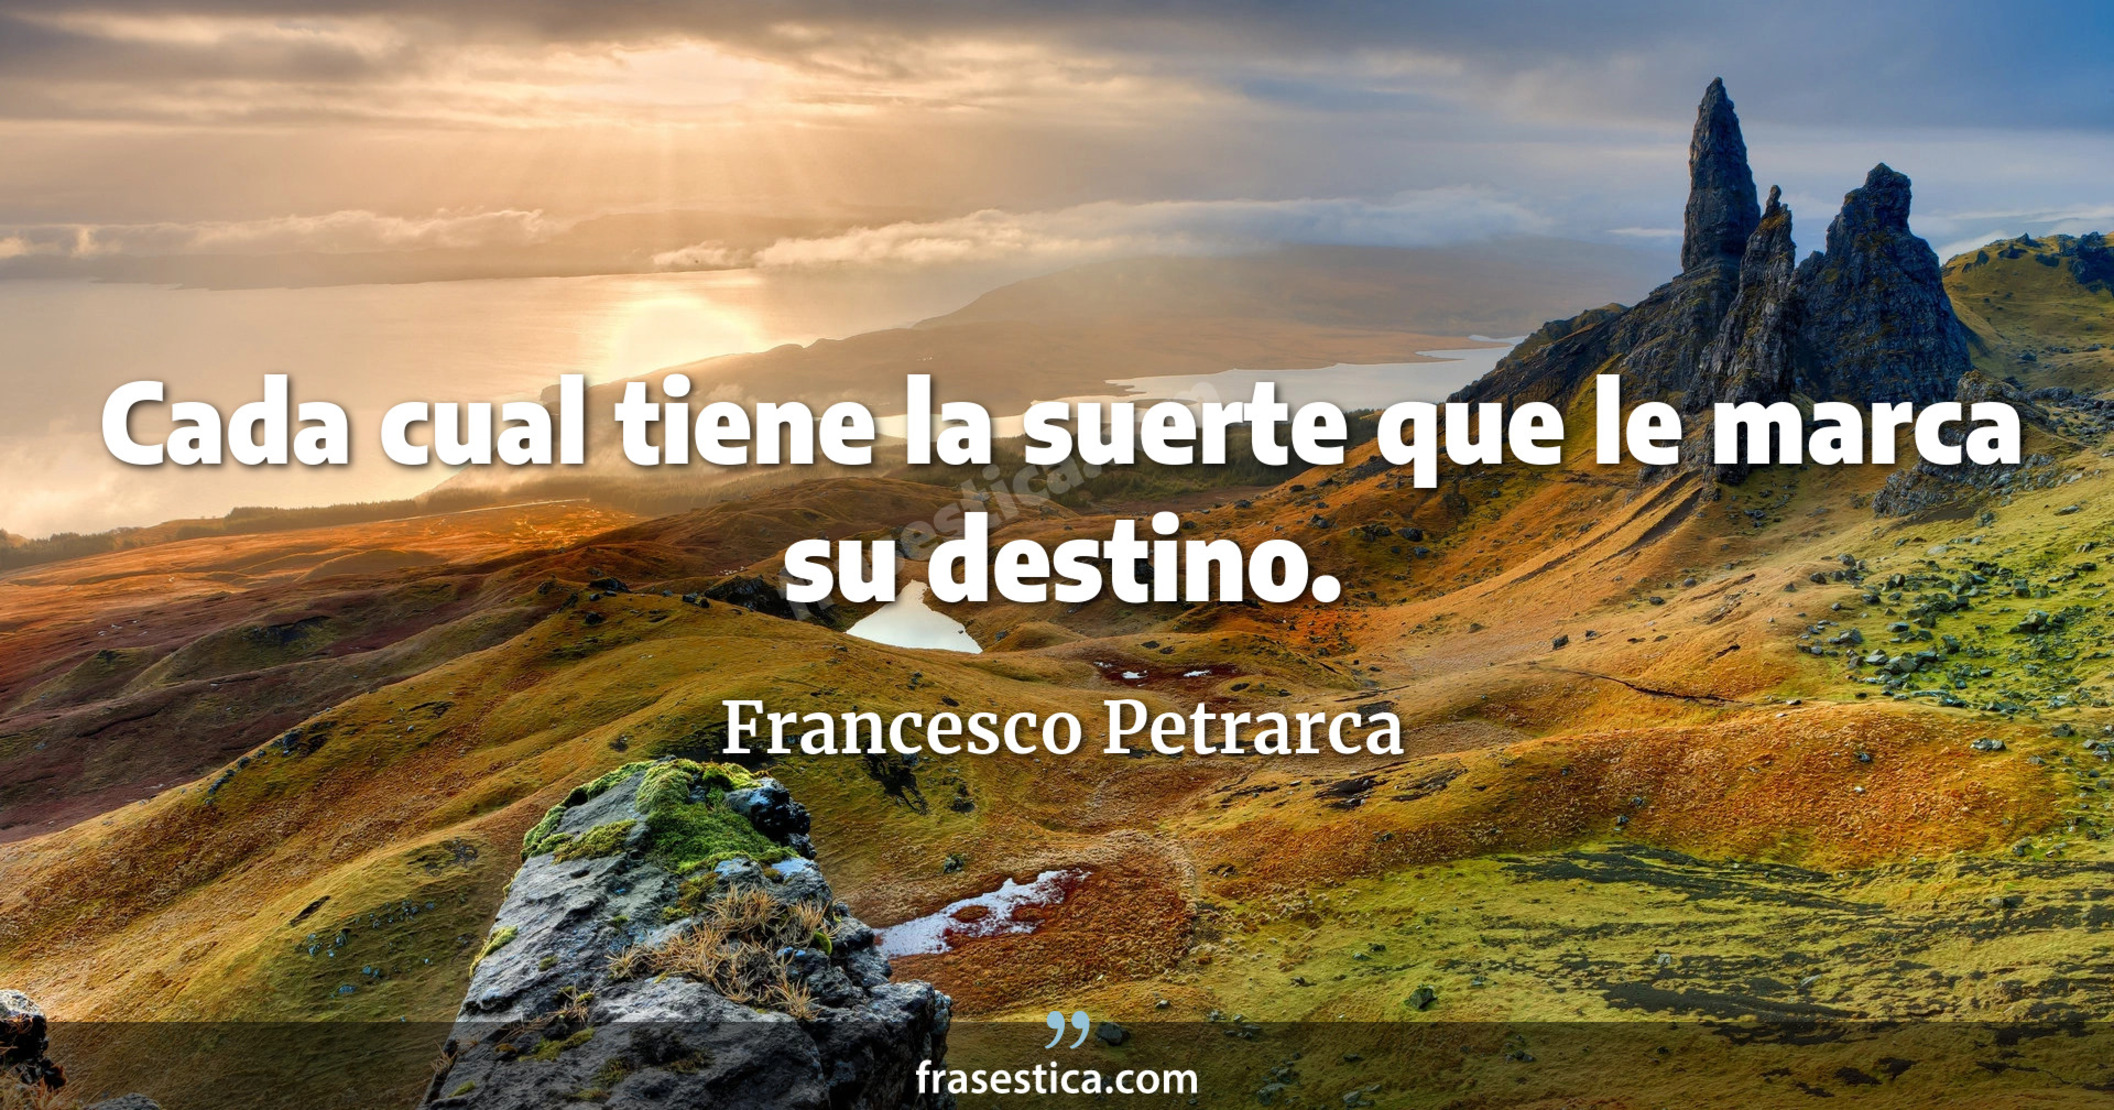 Cada cual tiene la suerte que le marca su destino. - Francesco Petrarca